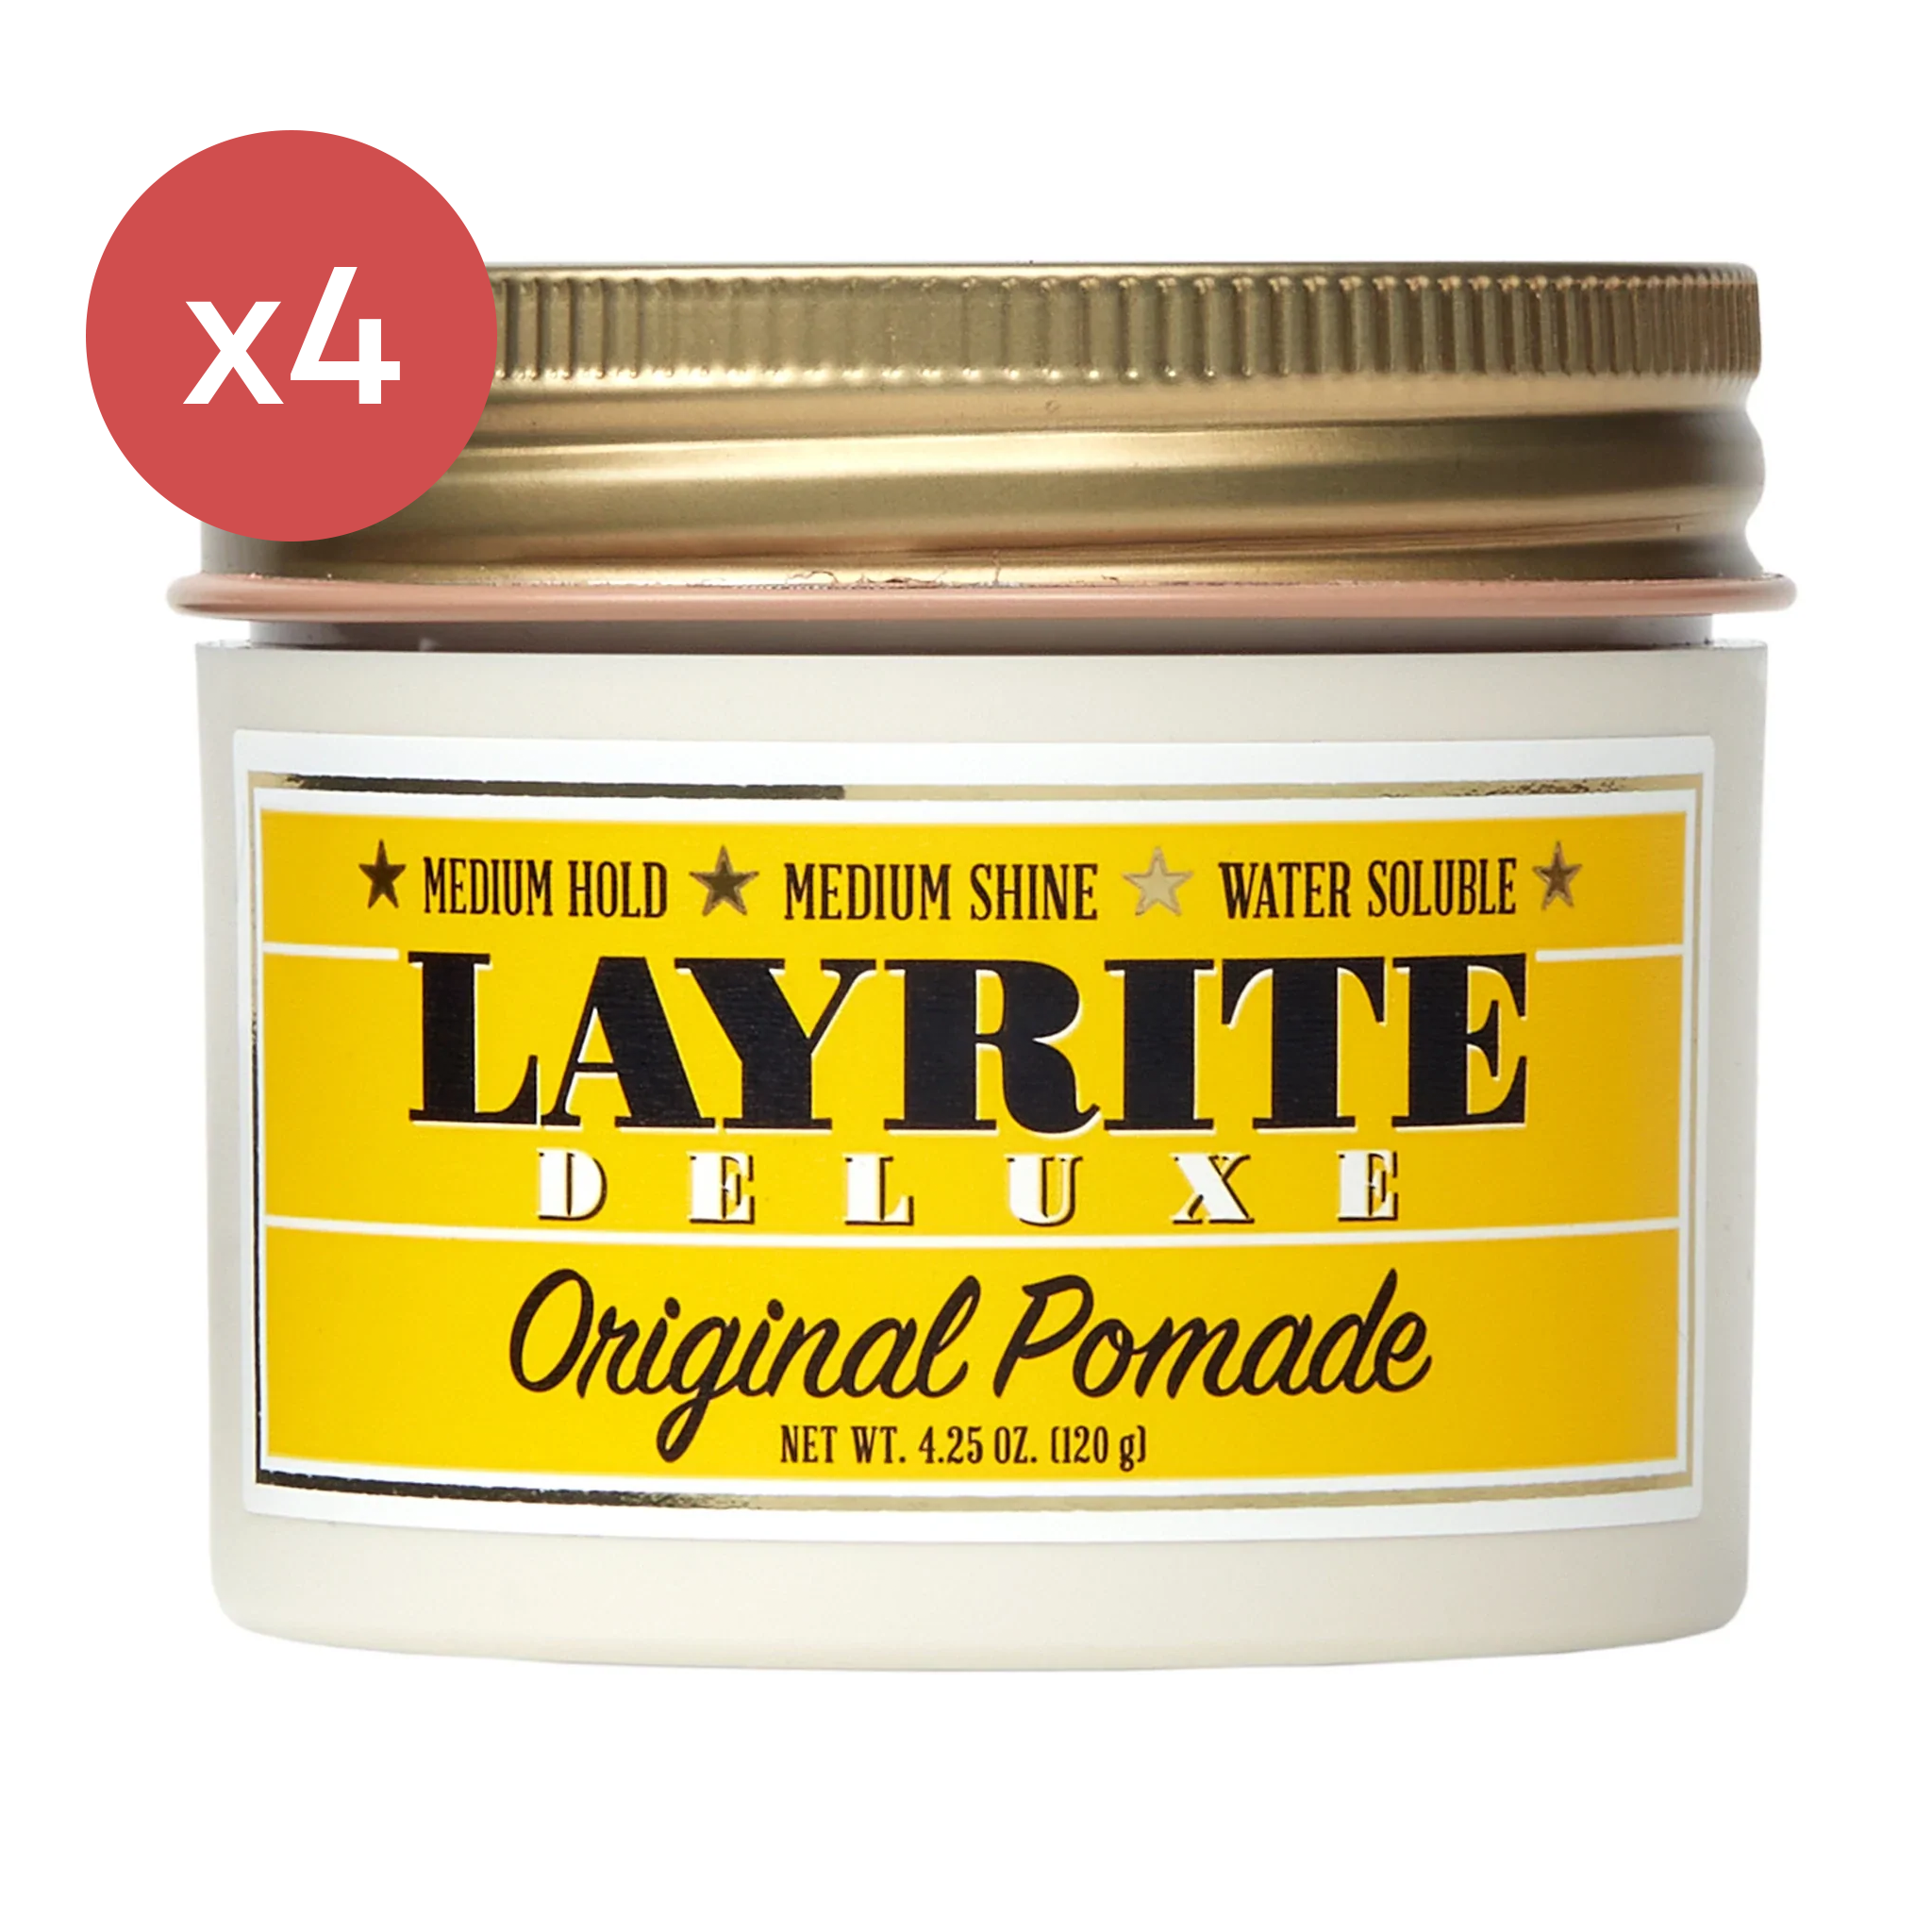 Layrite Original Pomade Quad